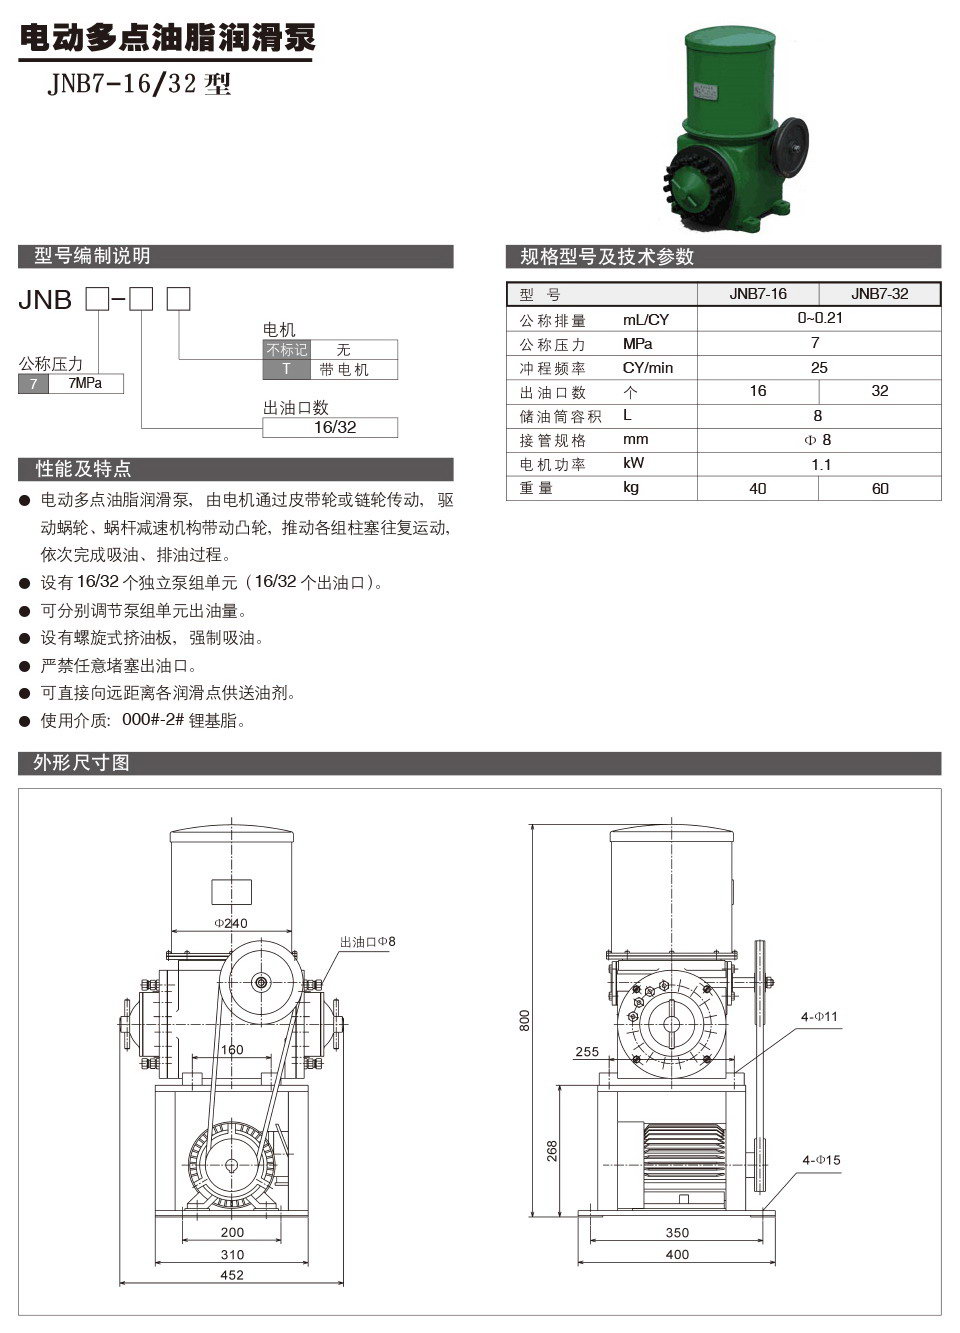 电动多点油脂润滑泵JNB7-1632型参数.jpg